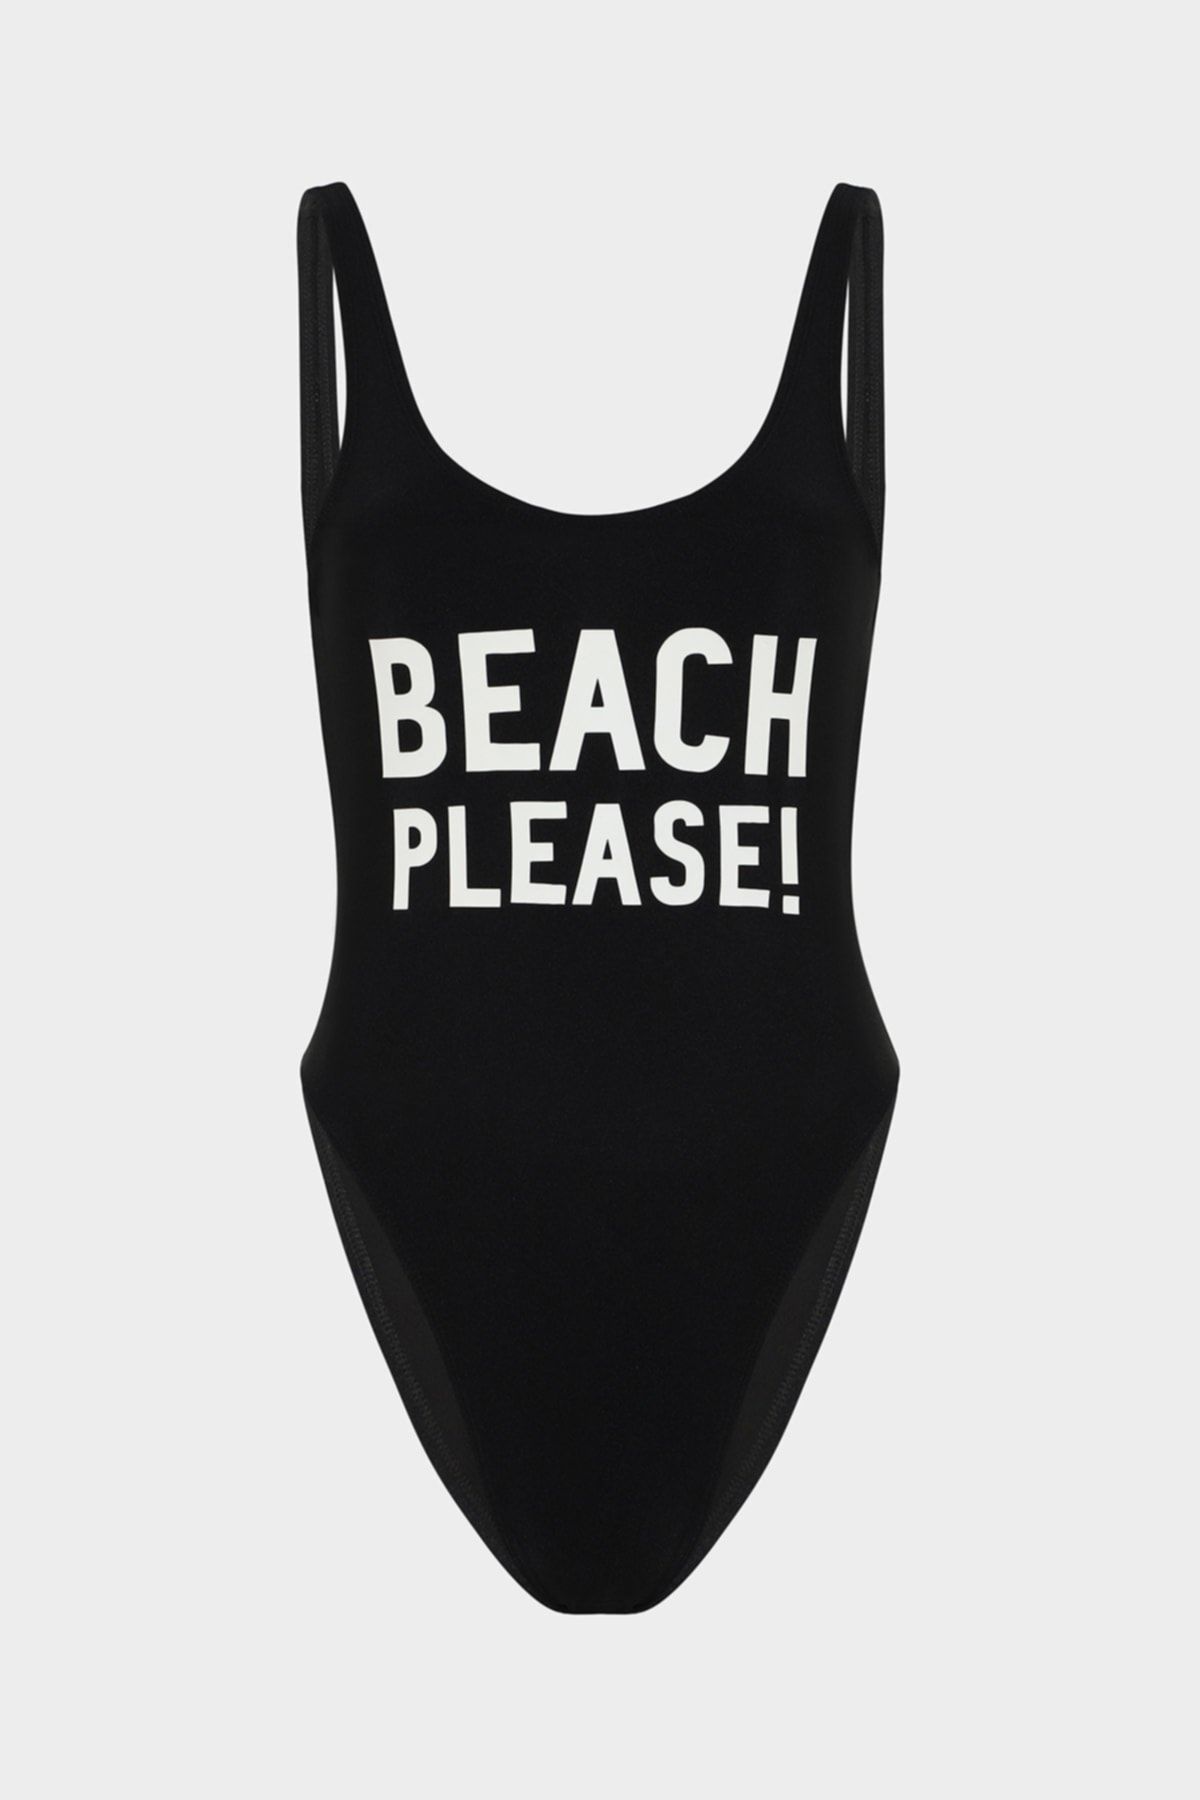 Açelya Okcu Beach Please ! Sloganlı Push Up Mayo